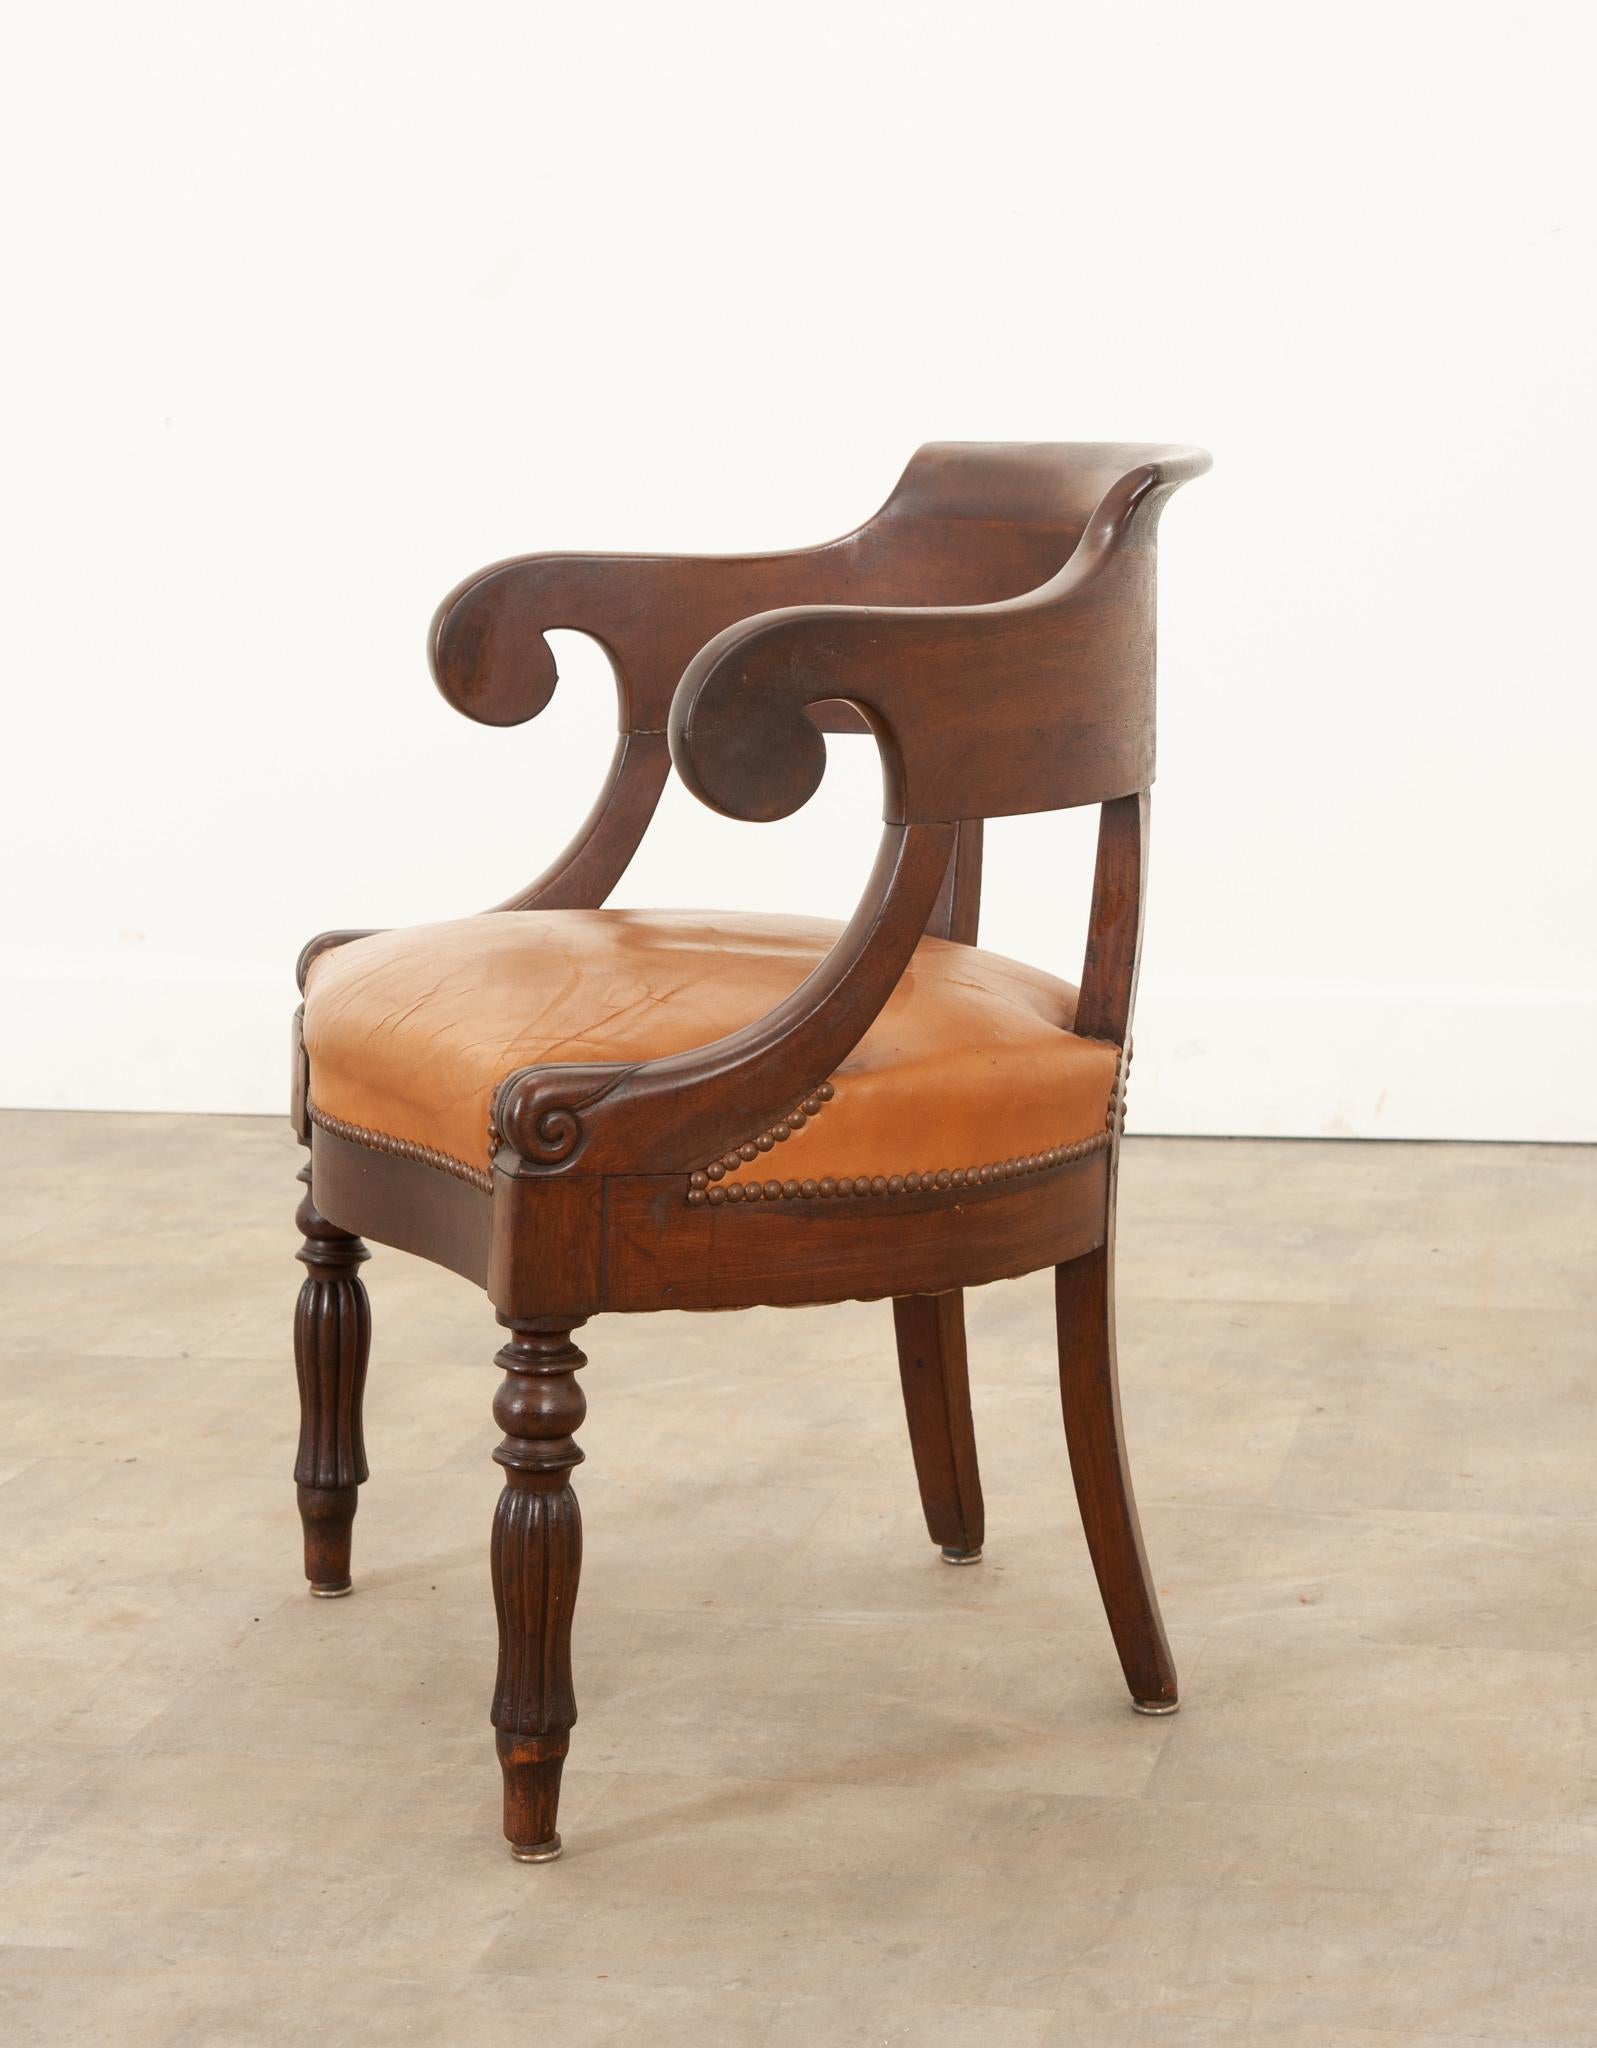 Ce fauteuil de bureau de style Charles X est de forme classique et présente une assise en cuir caramel merveilleusement usée. Le cadre du dossier incurvé en acajou présente une touche sophistiquée de détails sculptés à la main sur les bras et les